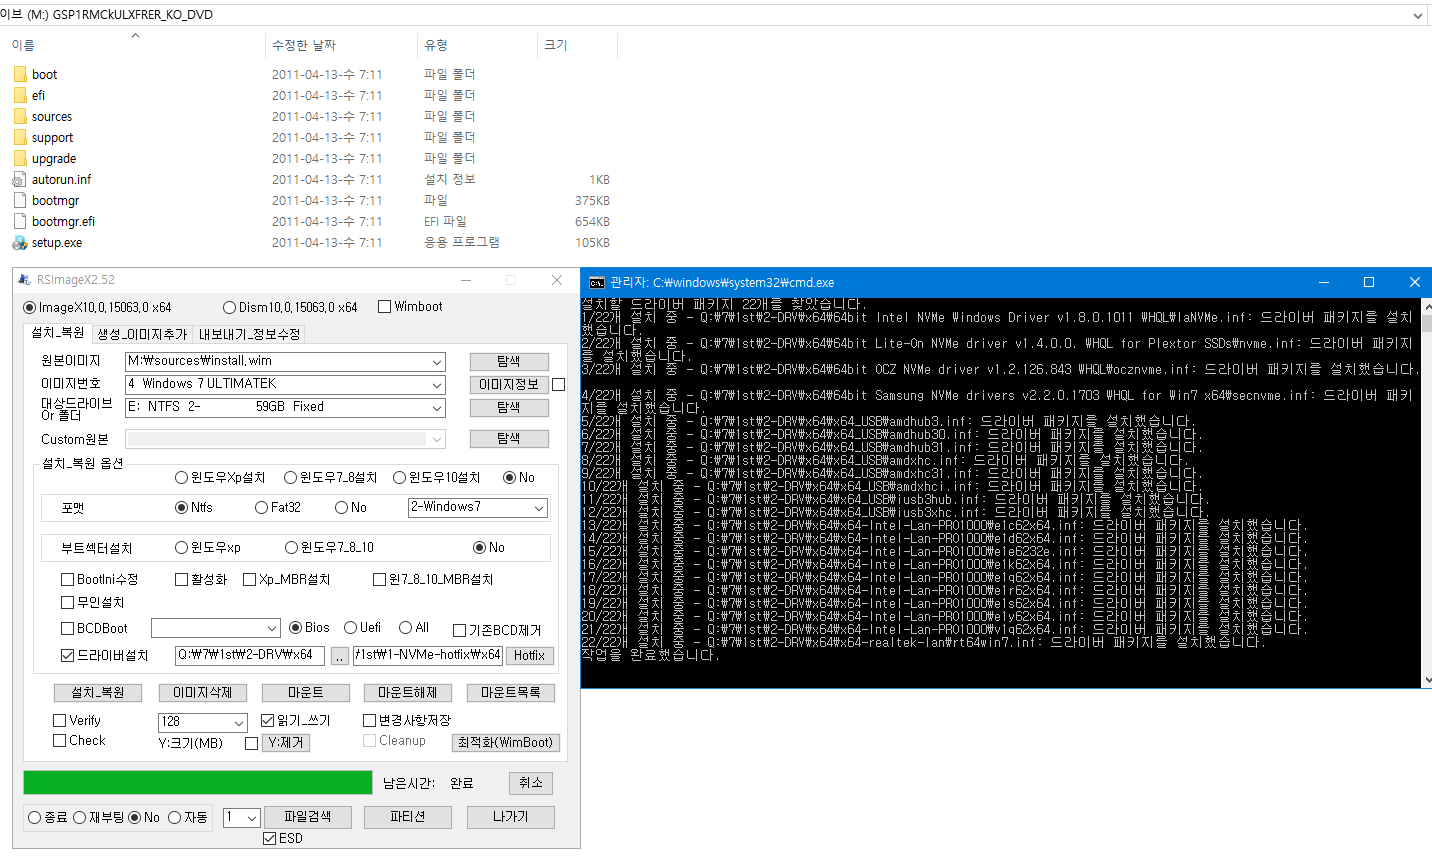 RSImageX 2.52버전에 윈도 업데이트 설치 기능이 추가 되었네요-드라이버 설치는 벌써 추가 되었습니다 - 창 닫아야 진행됩니다 2017-05-14_161333.png